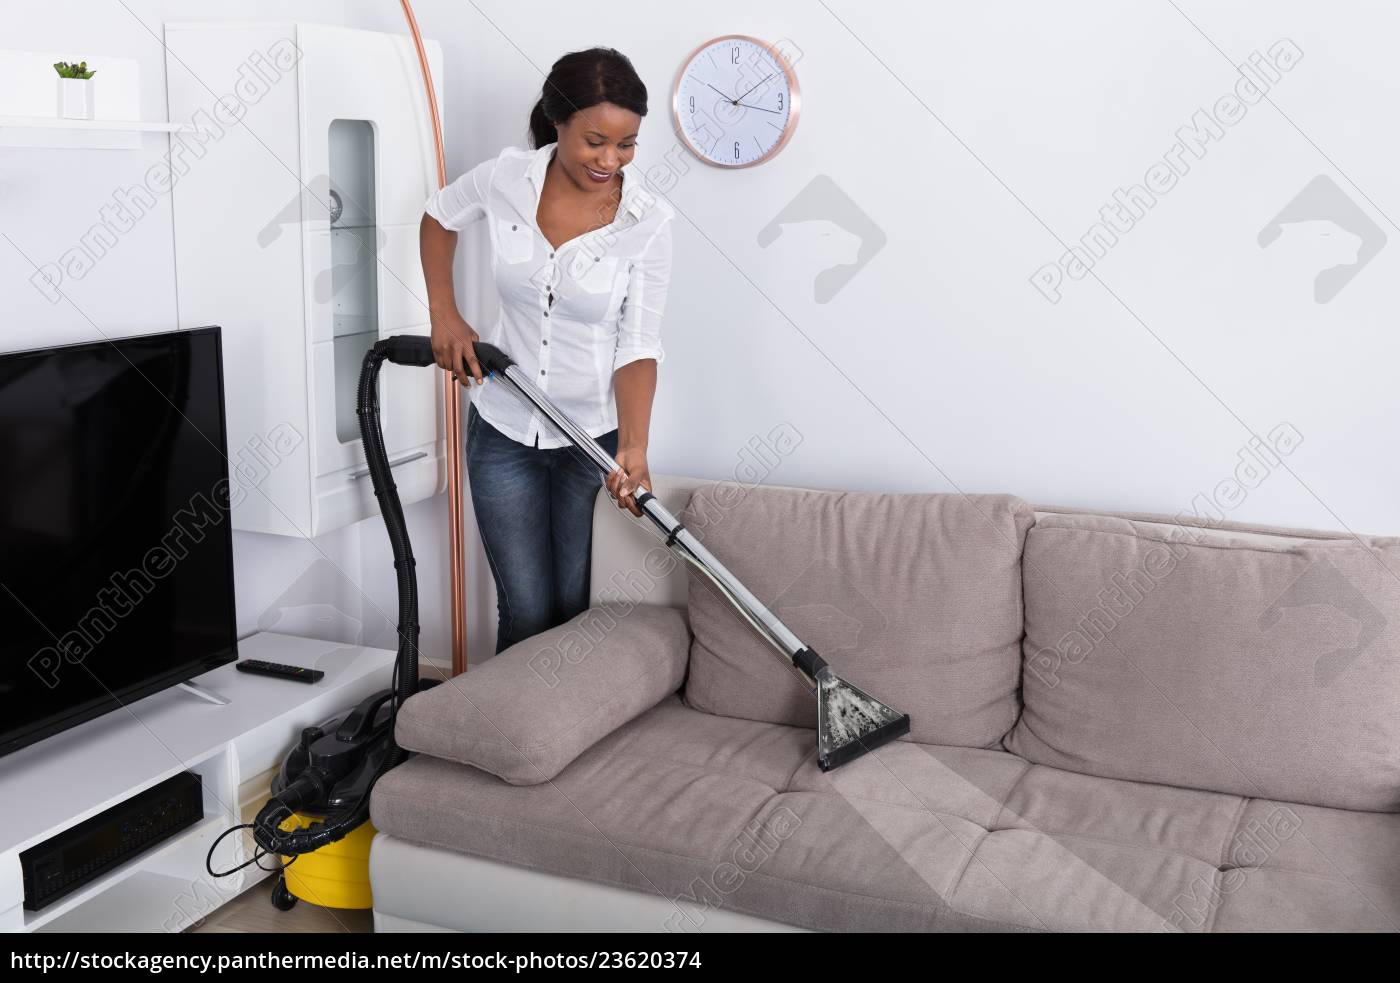 Donna africana che pulisce il divano con aspirapolvere - Stockphoto  #23620374